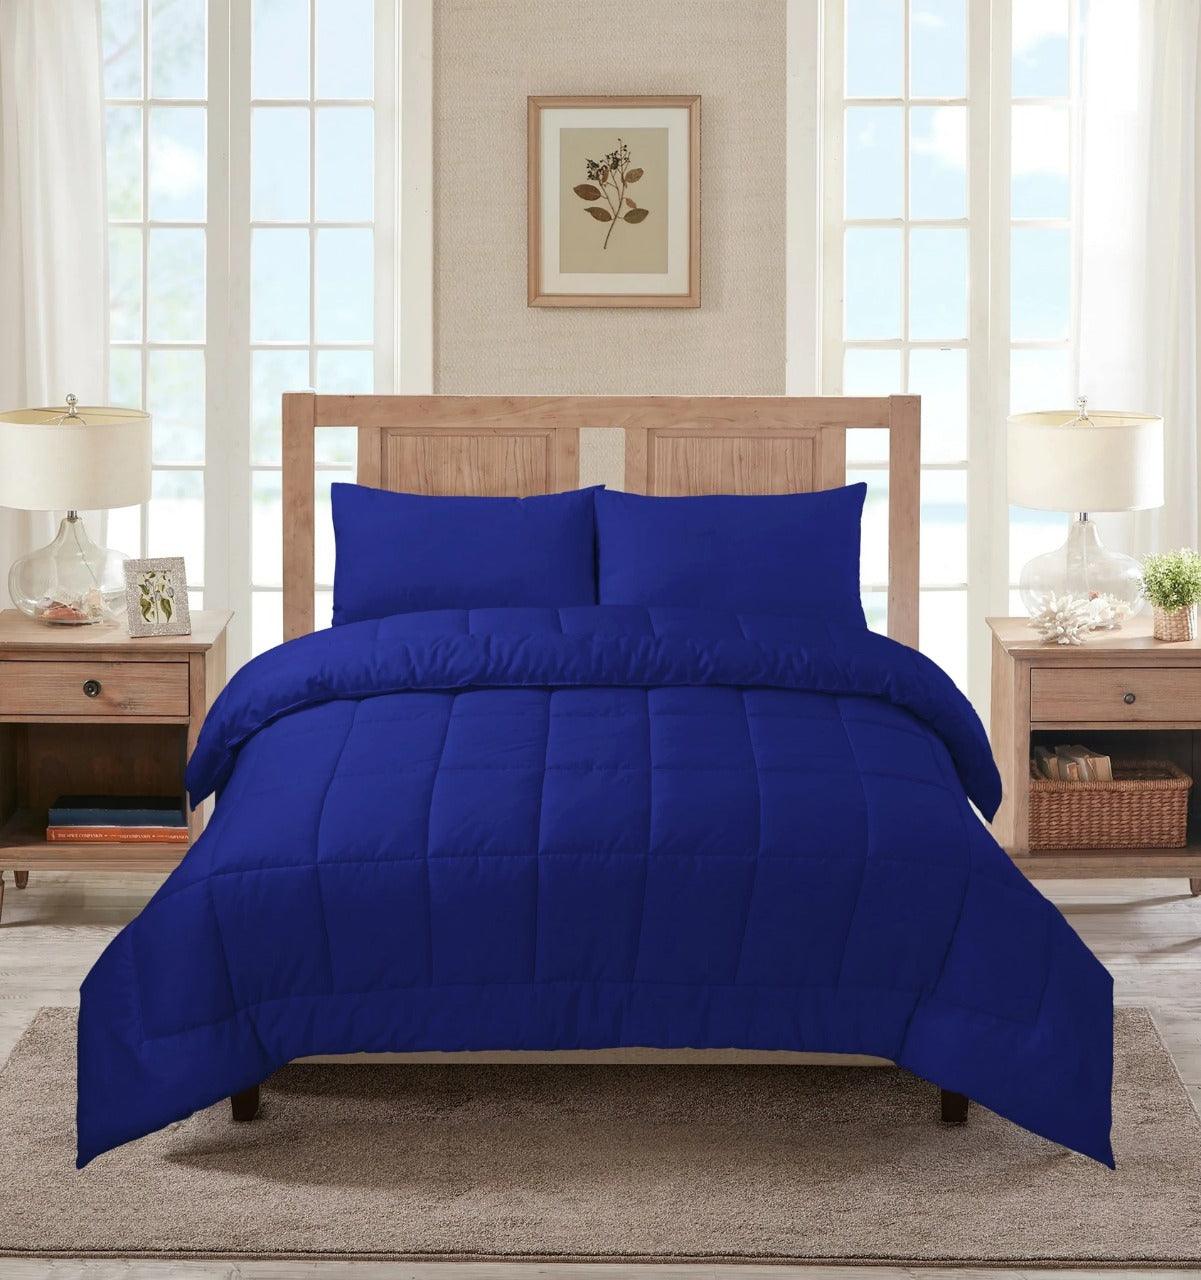 Royal Blue Summer Comforter - 92Bedding